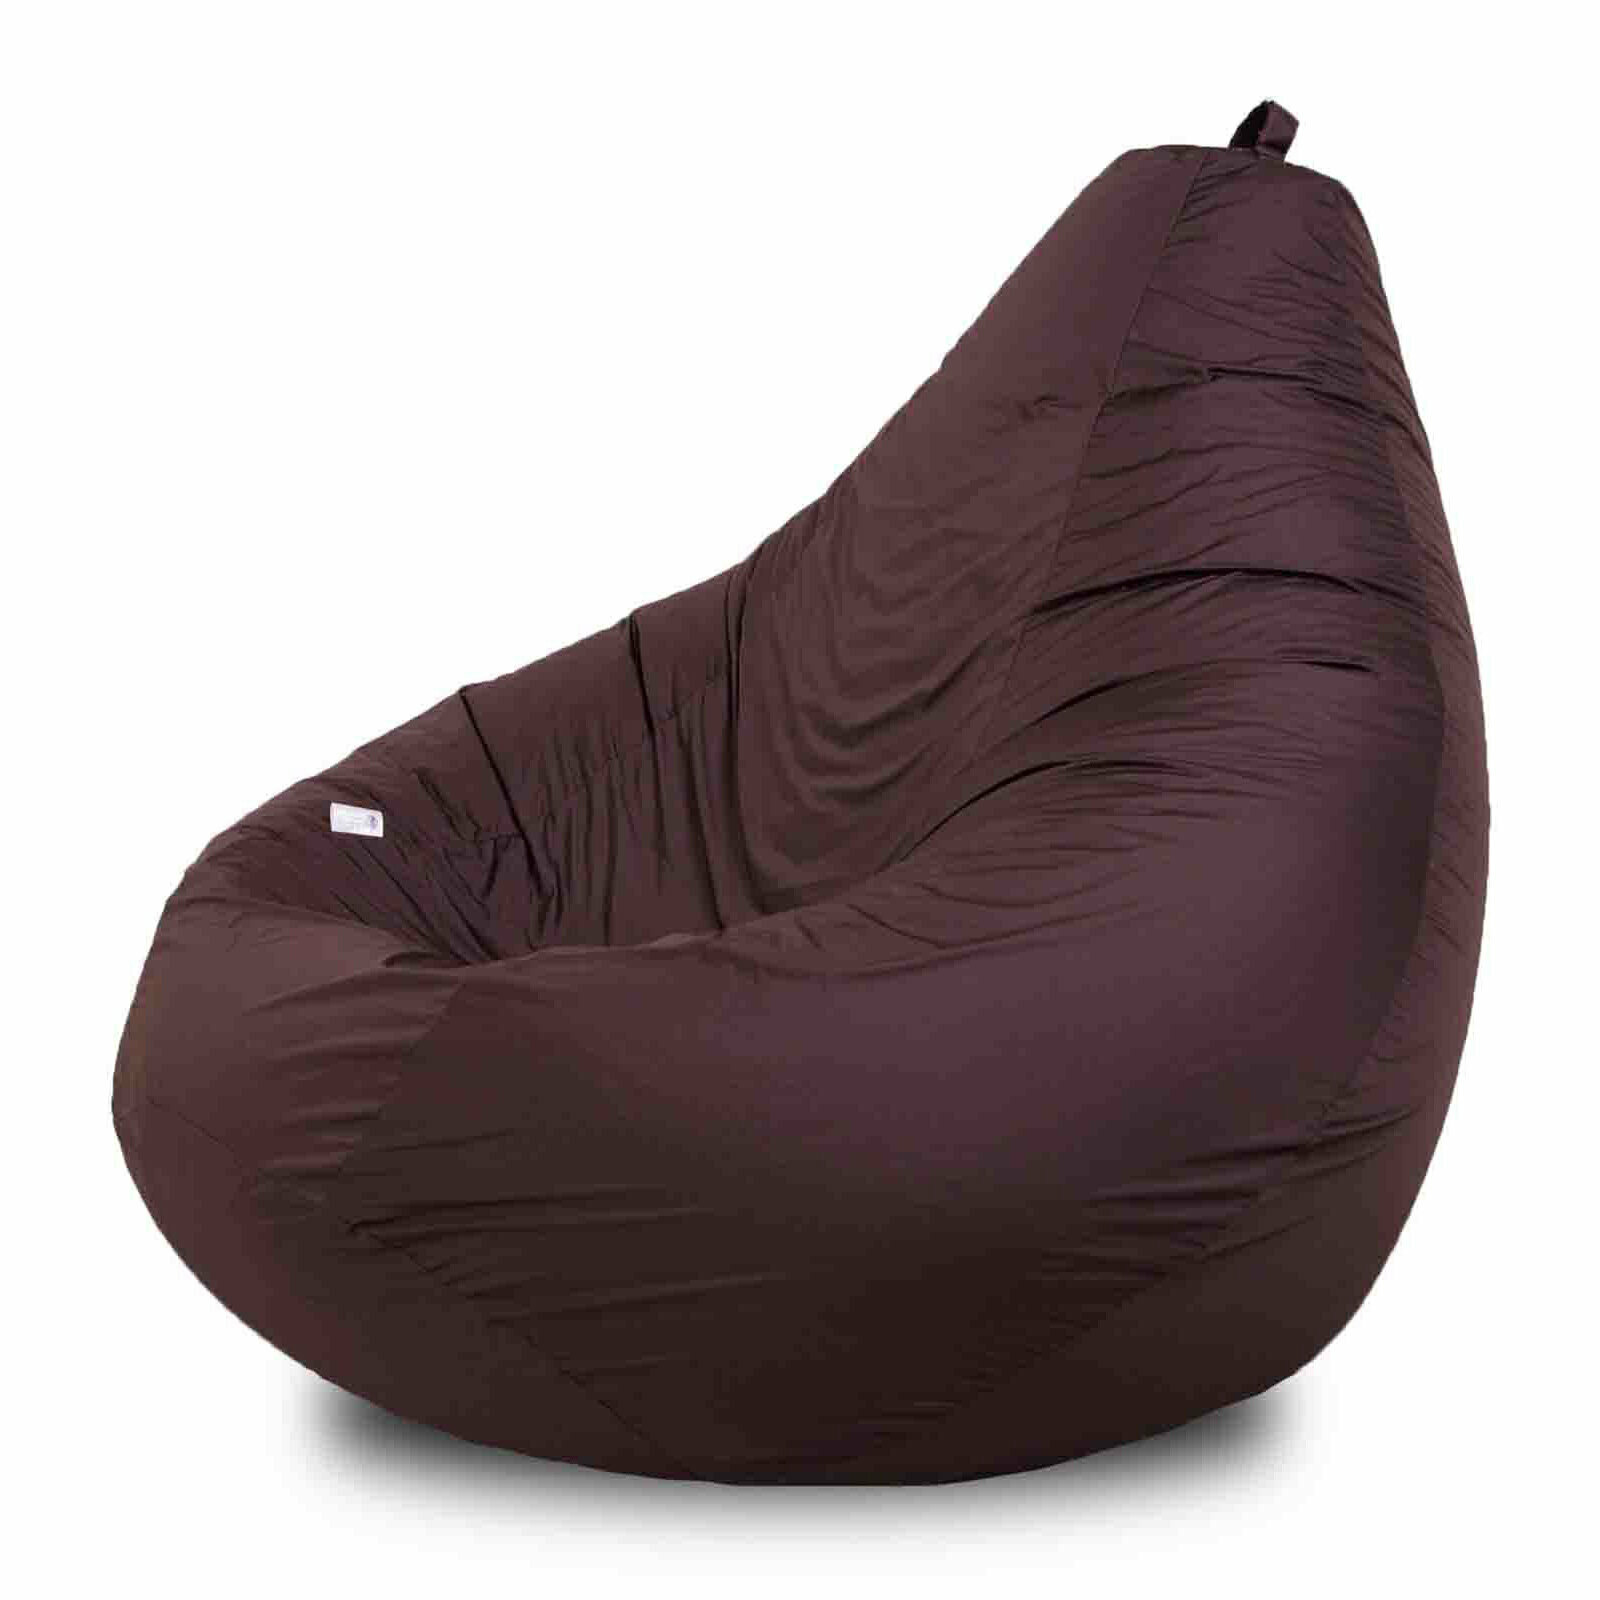 Кресло-мешок груша большого размера XXXXL (145x105) цвет шоколадный Он дарит ощущение тепла, покоя